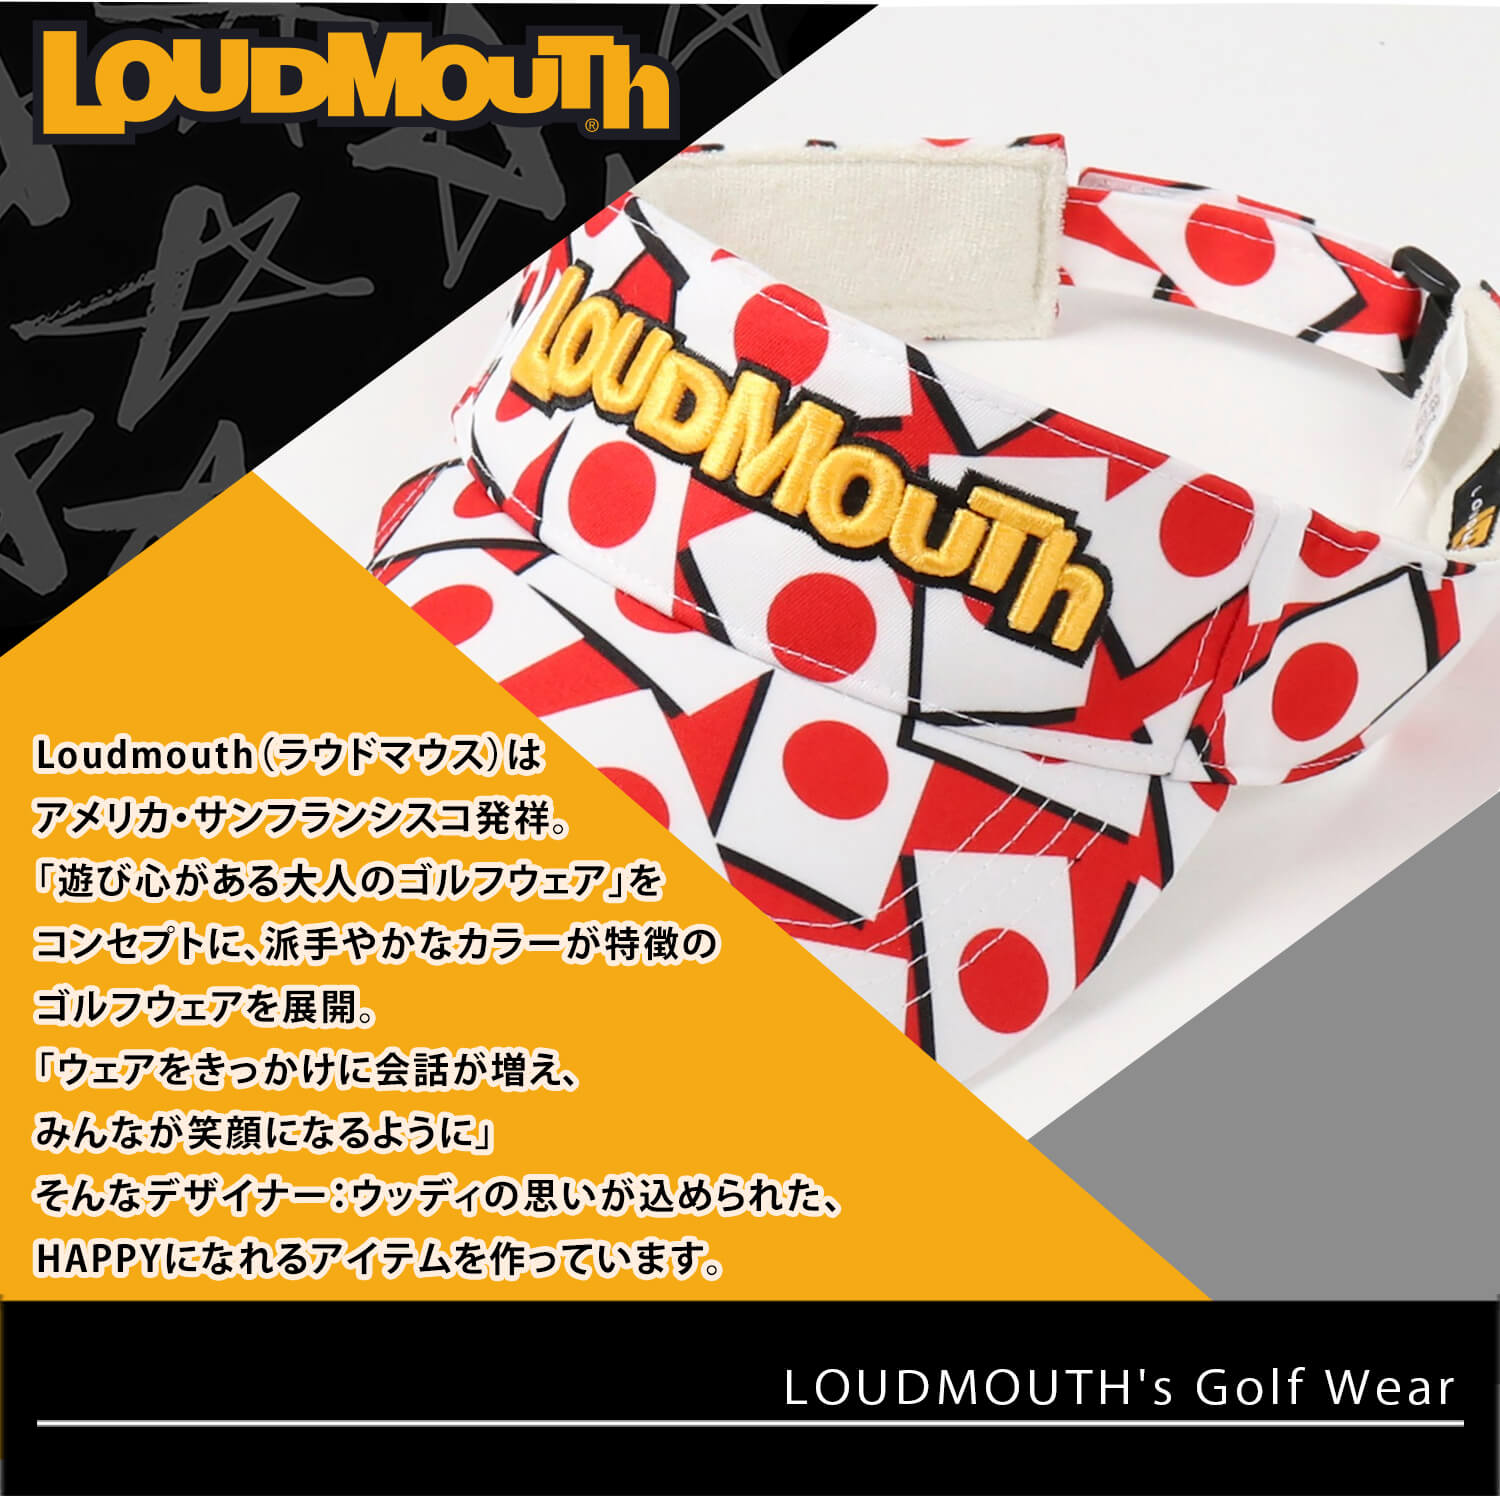 Loudmouth ラウドマウス フリーサイズ ゴルフウェア サンバイザー 総柄 レディース 日よけ ゴルフ小物 バイザー メンズ